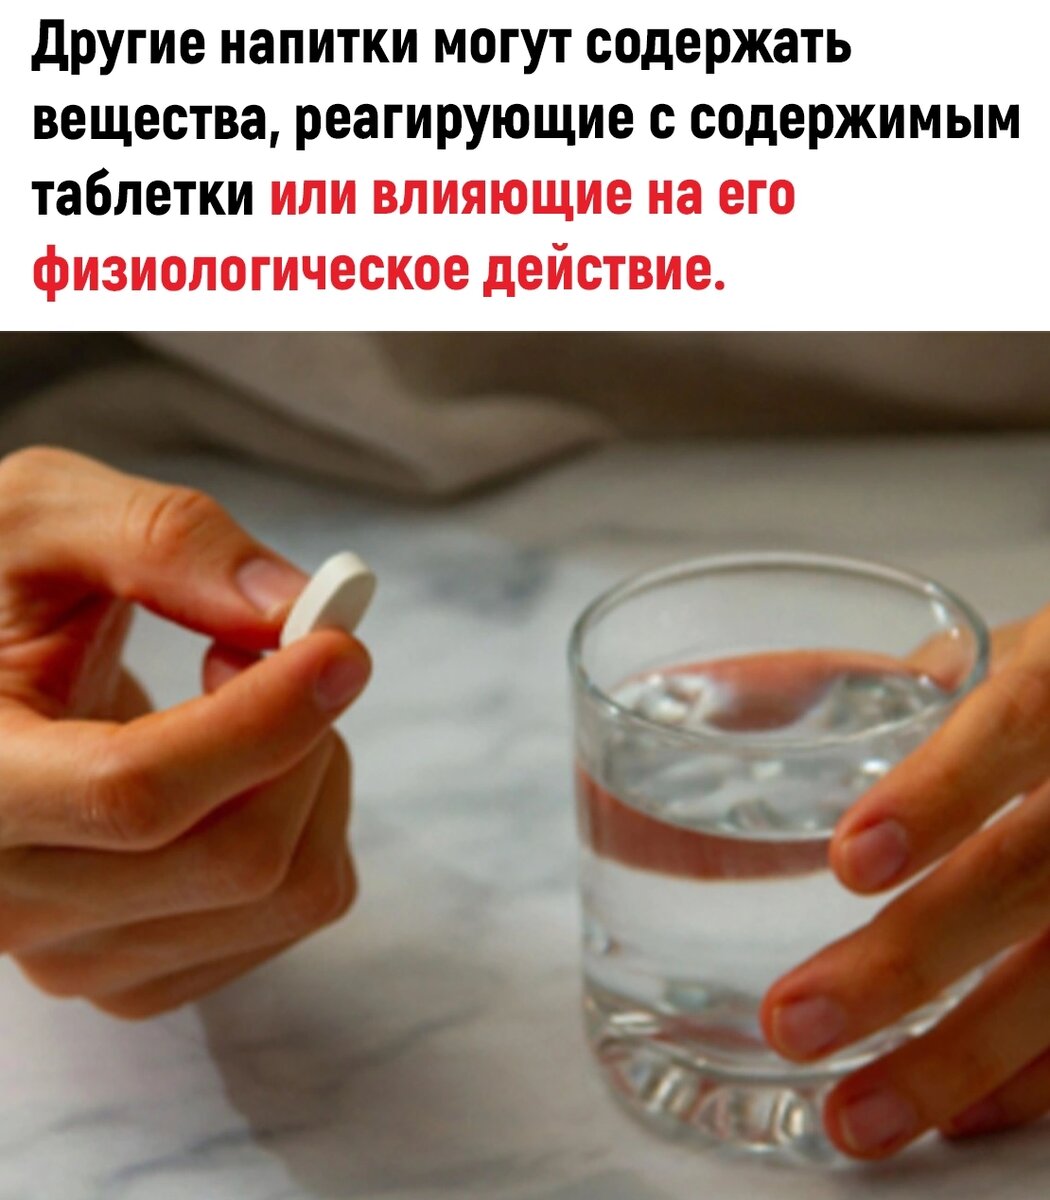 Таблетки надо запивать водой. Почему нужно запивать таблетки водой. Почему лекарство надо запивать водой. Почему таблетки надо запивать водой. Почему таблетки нужно запивать именно водой.